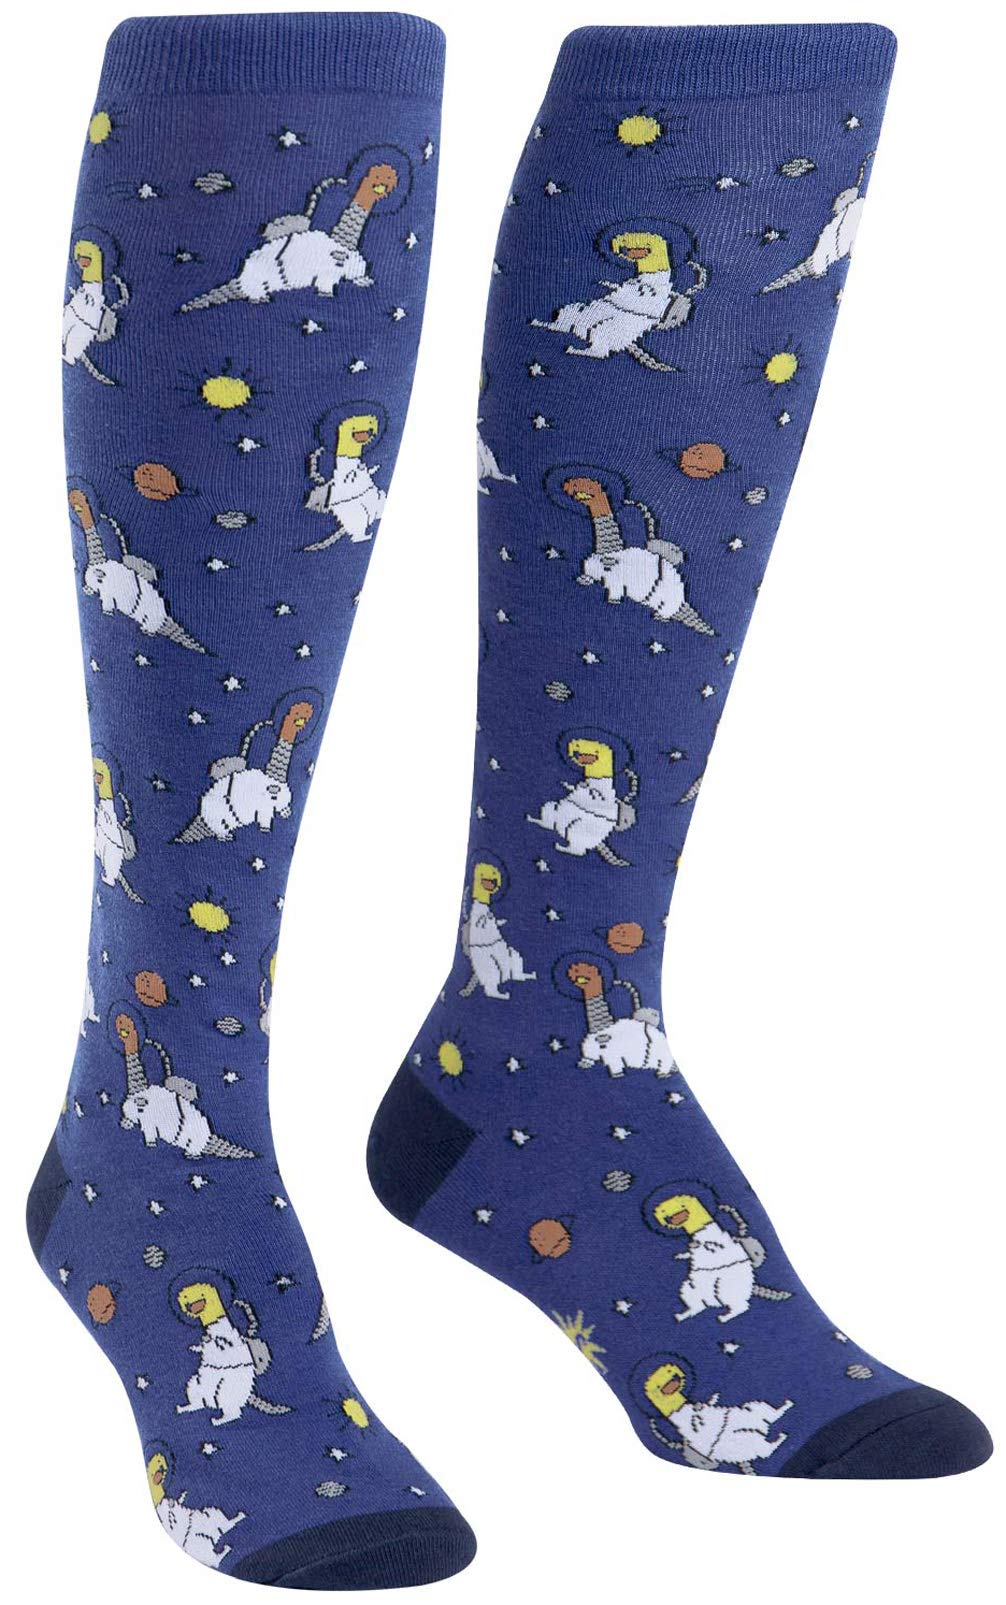 Dinosaur in space knee high socks adults